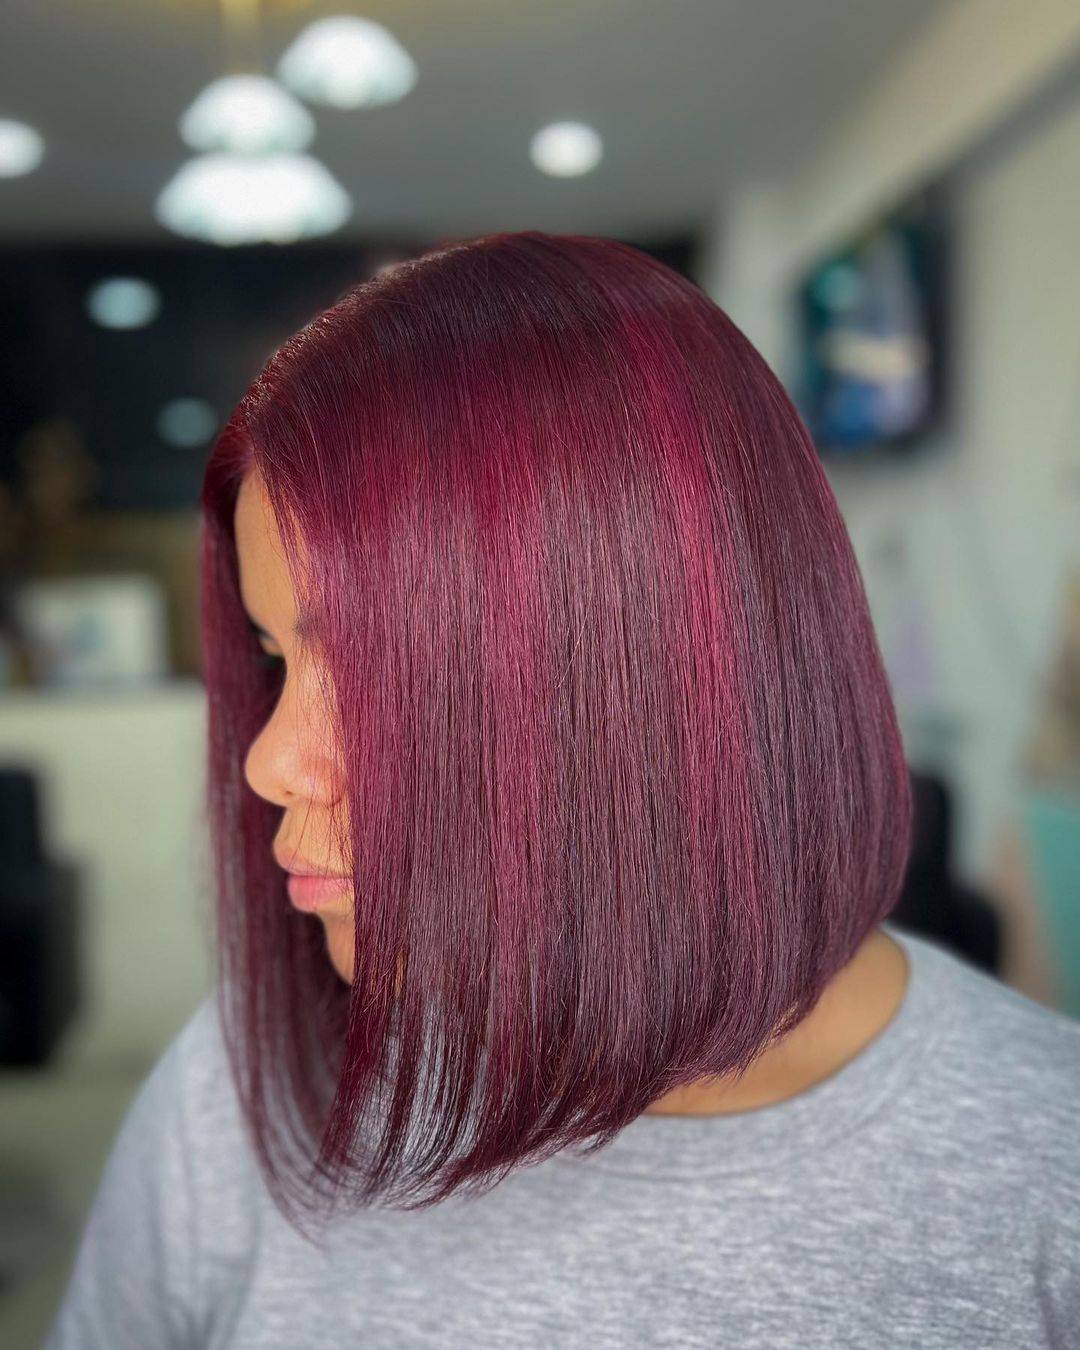 Burgundy hair color 316 burgundy hair color | burgundy hair color for women | burgundy hair color highlights Burgundy Hair Color